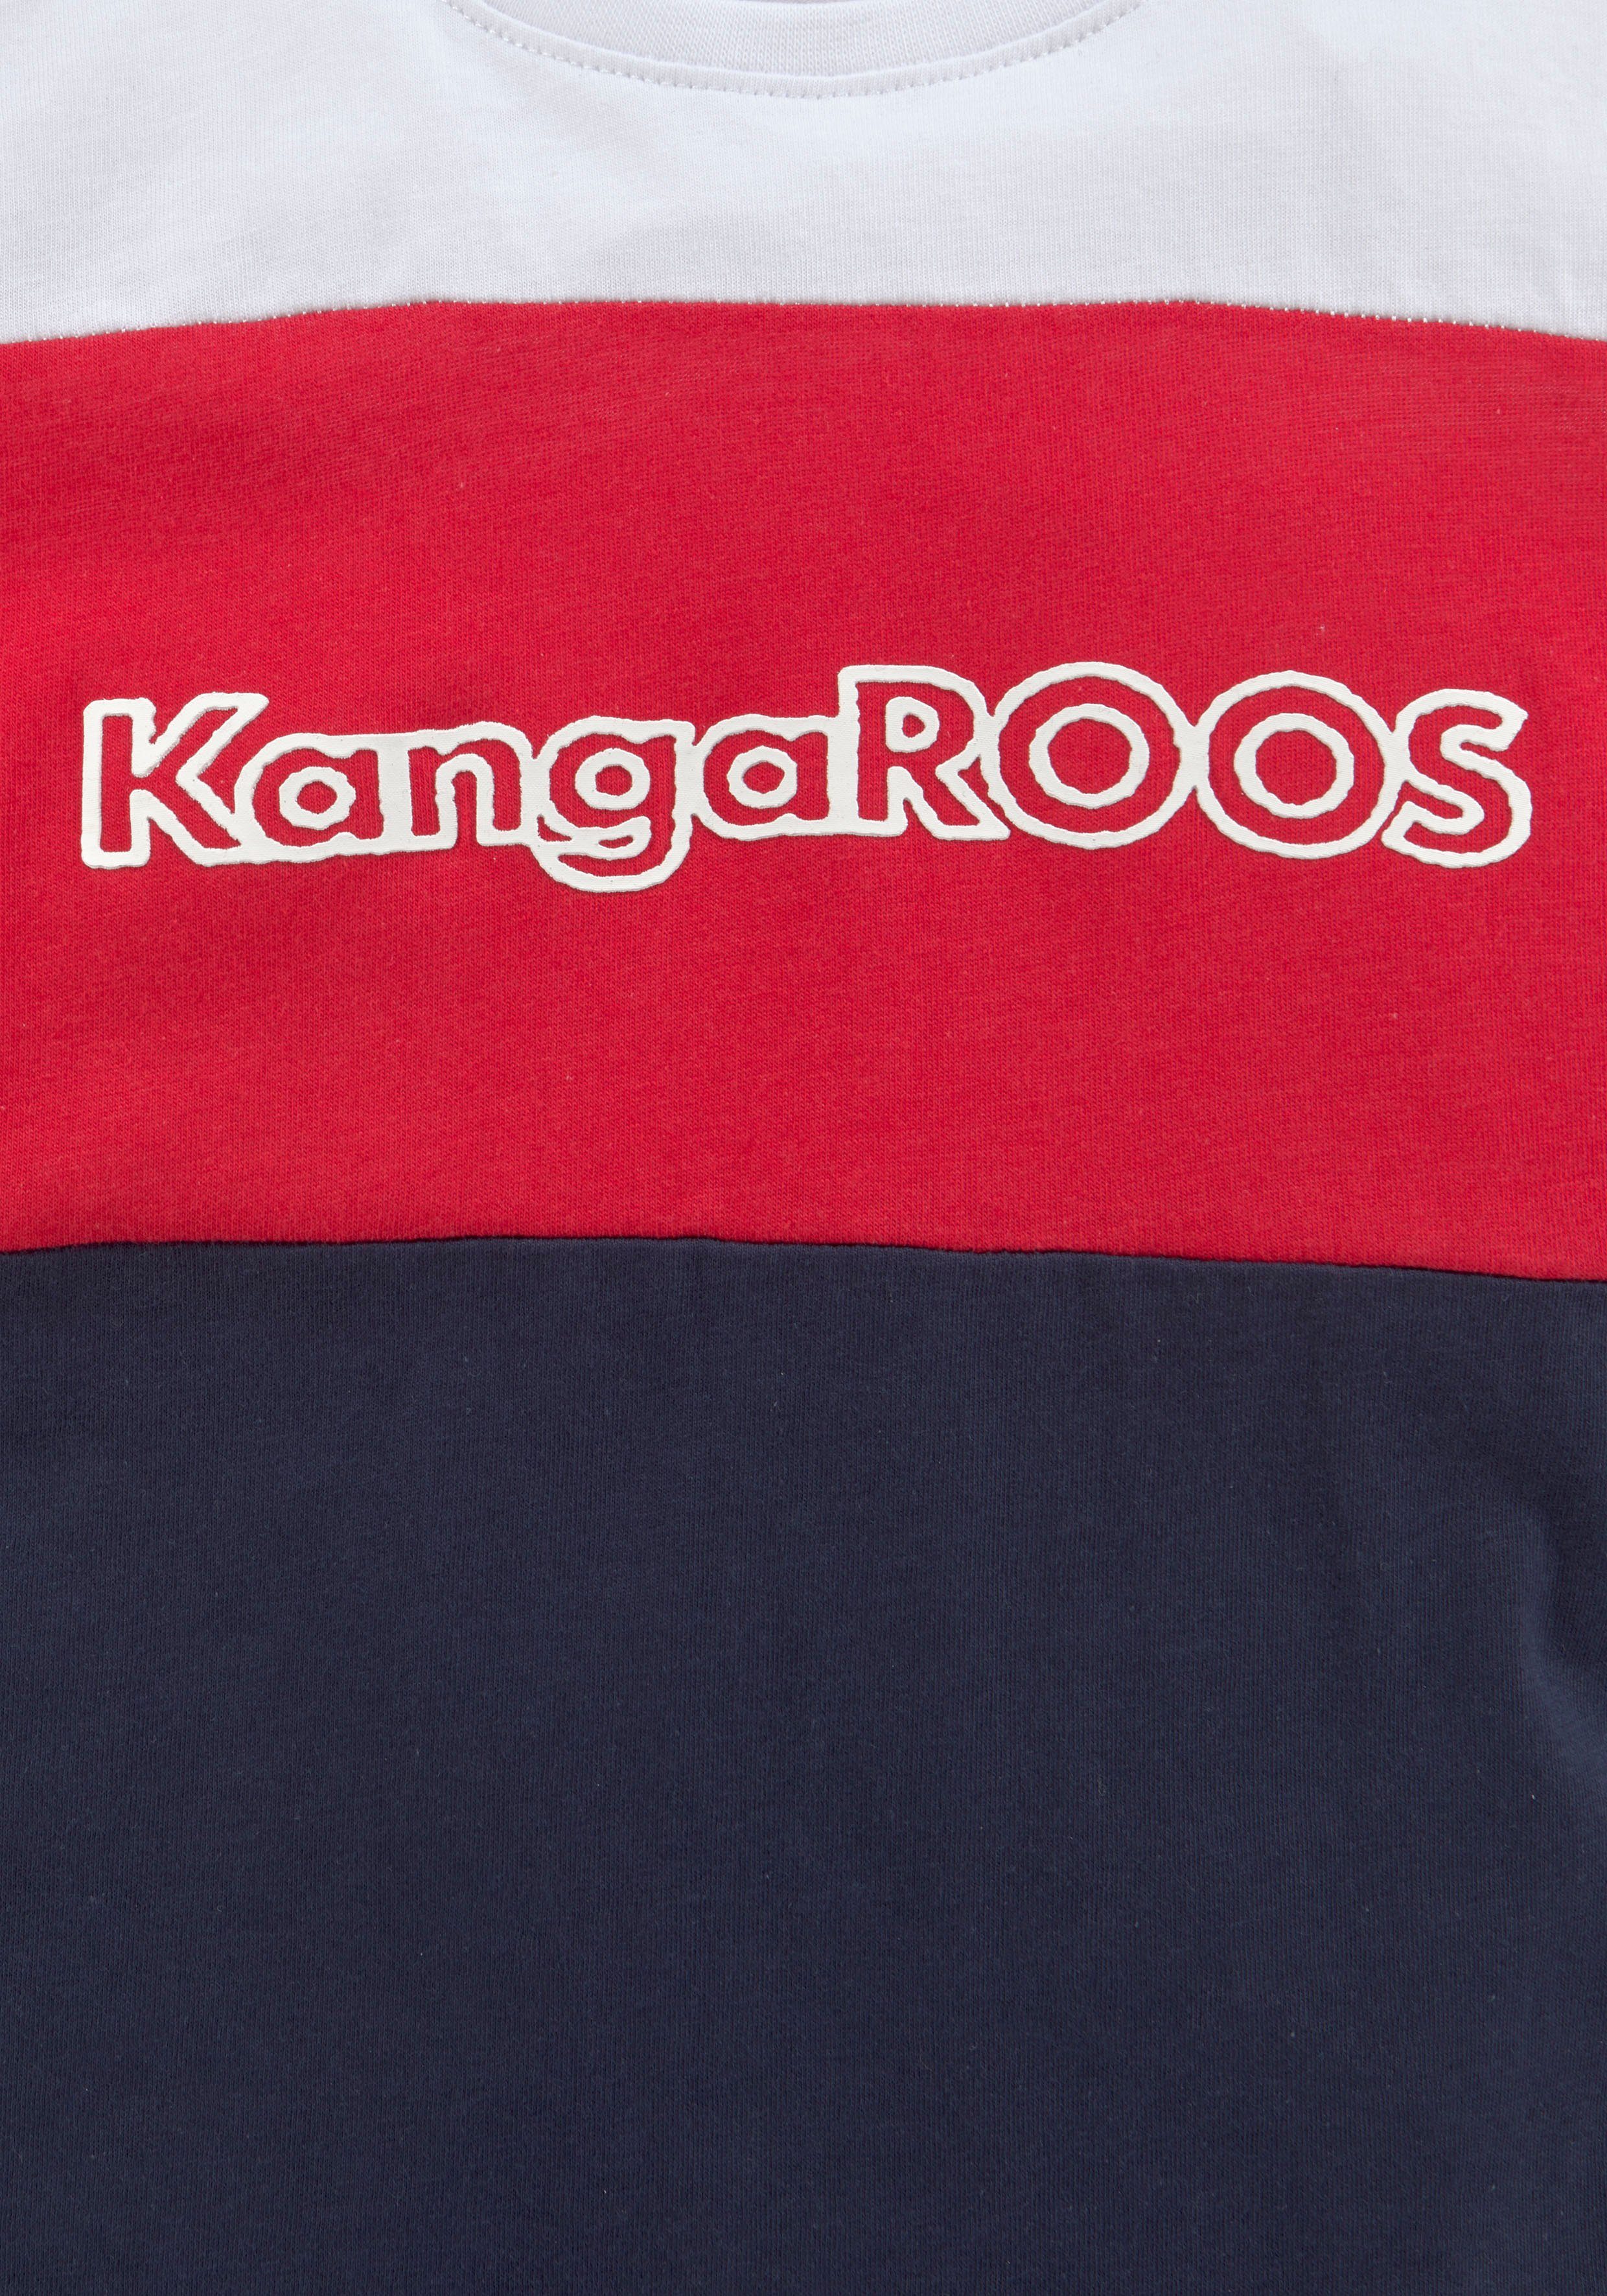 KangaROOS in Colorblockdesign T-Shirt